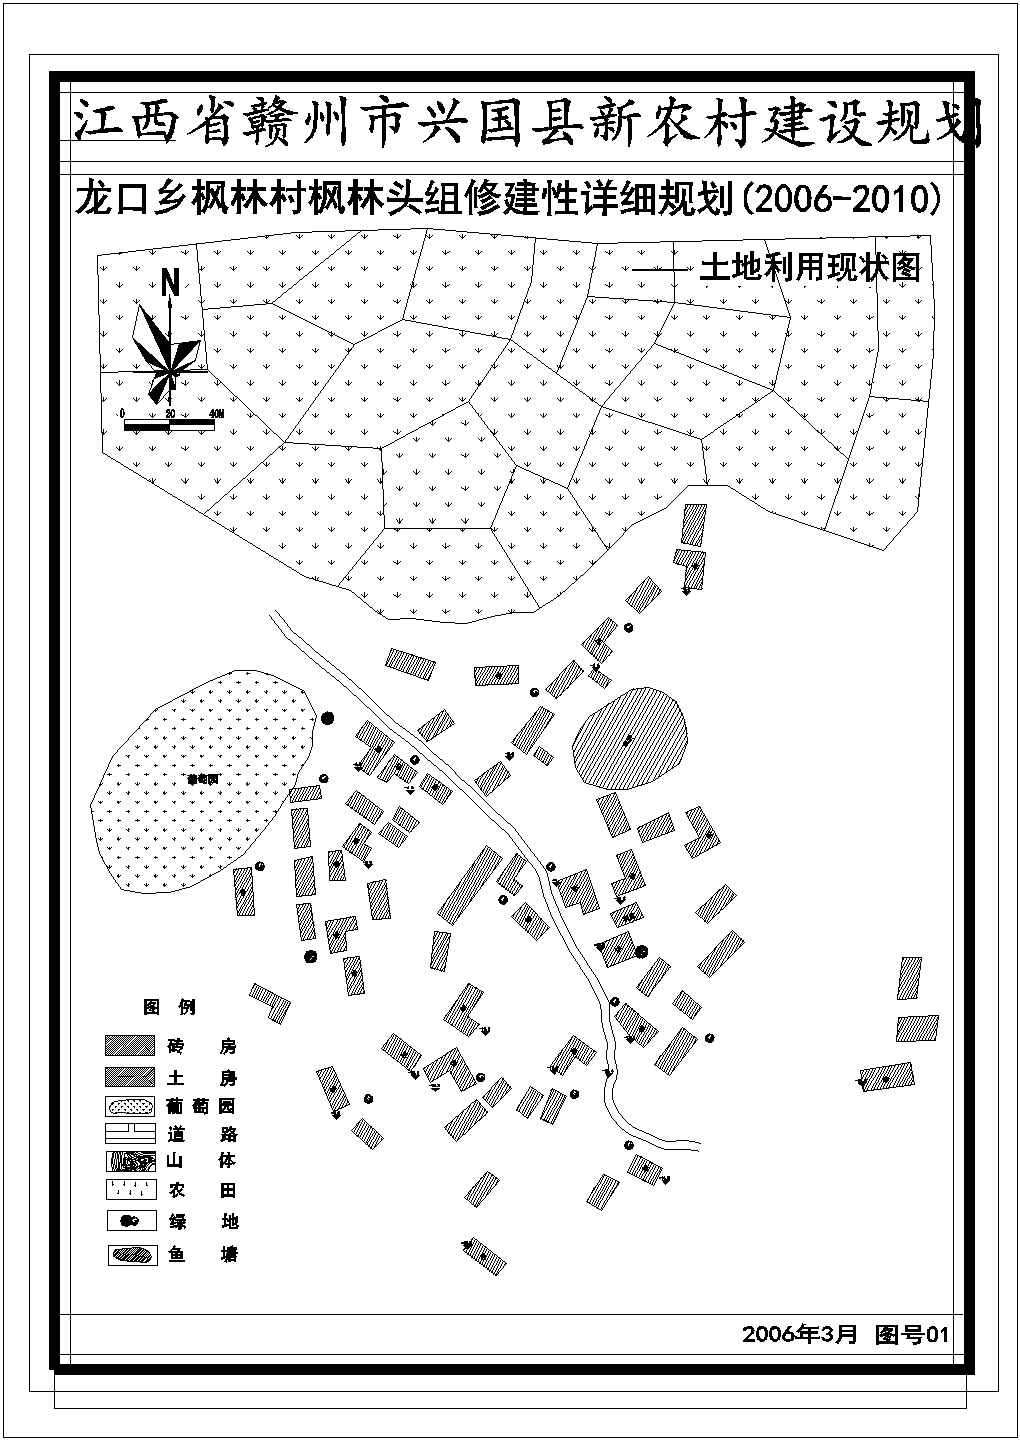 【南京】六合区某地新农村全套景观施工设计cad图纸